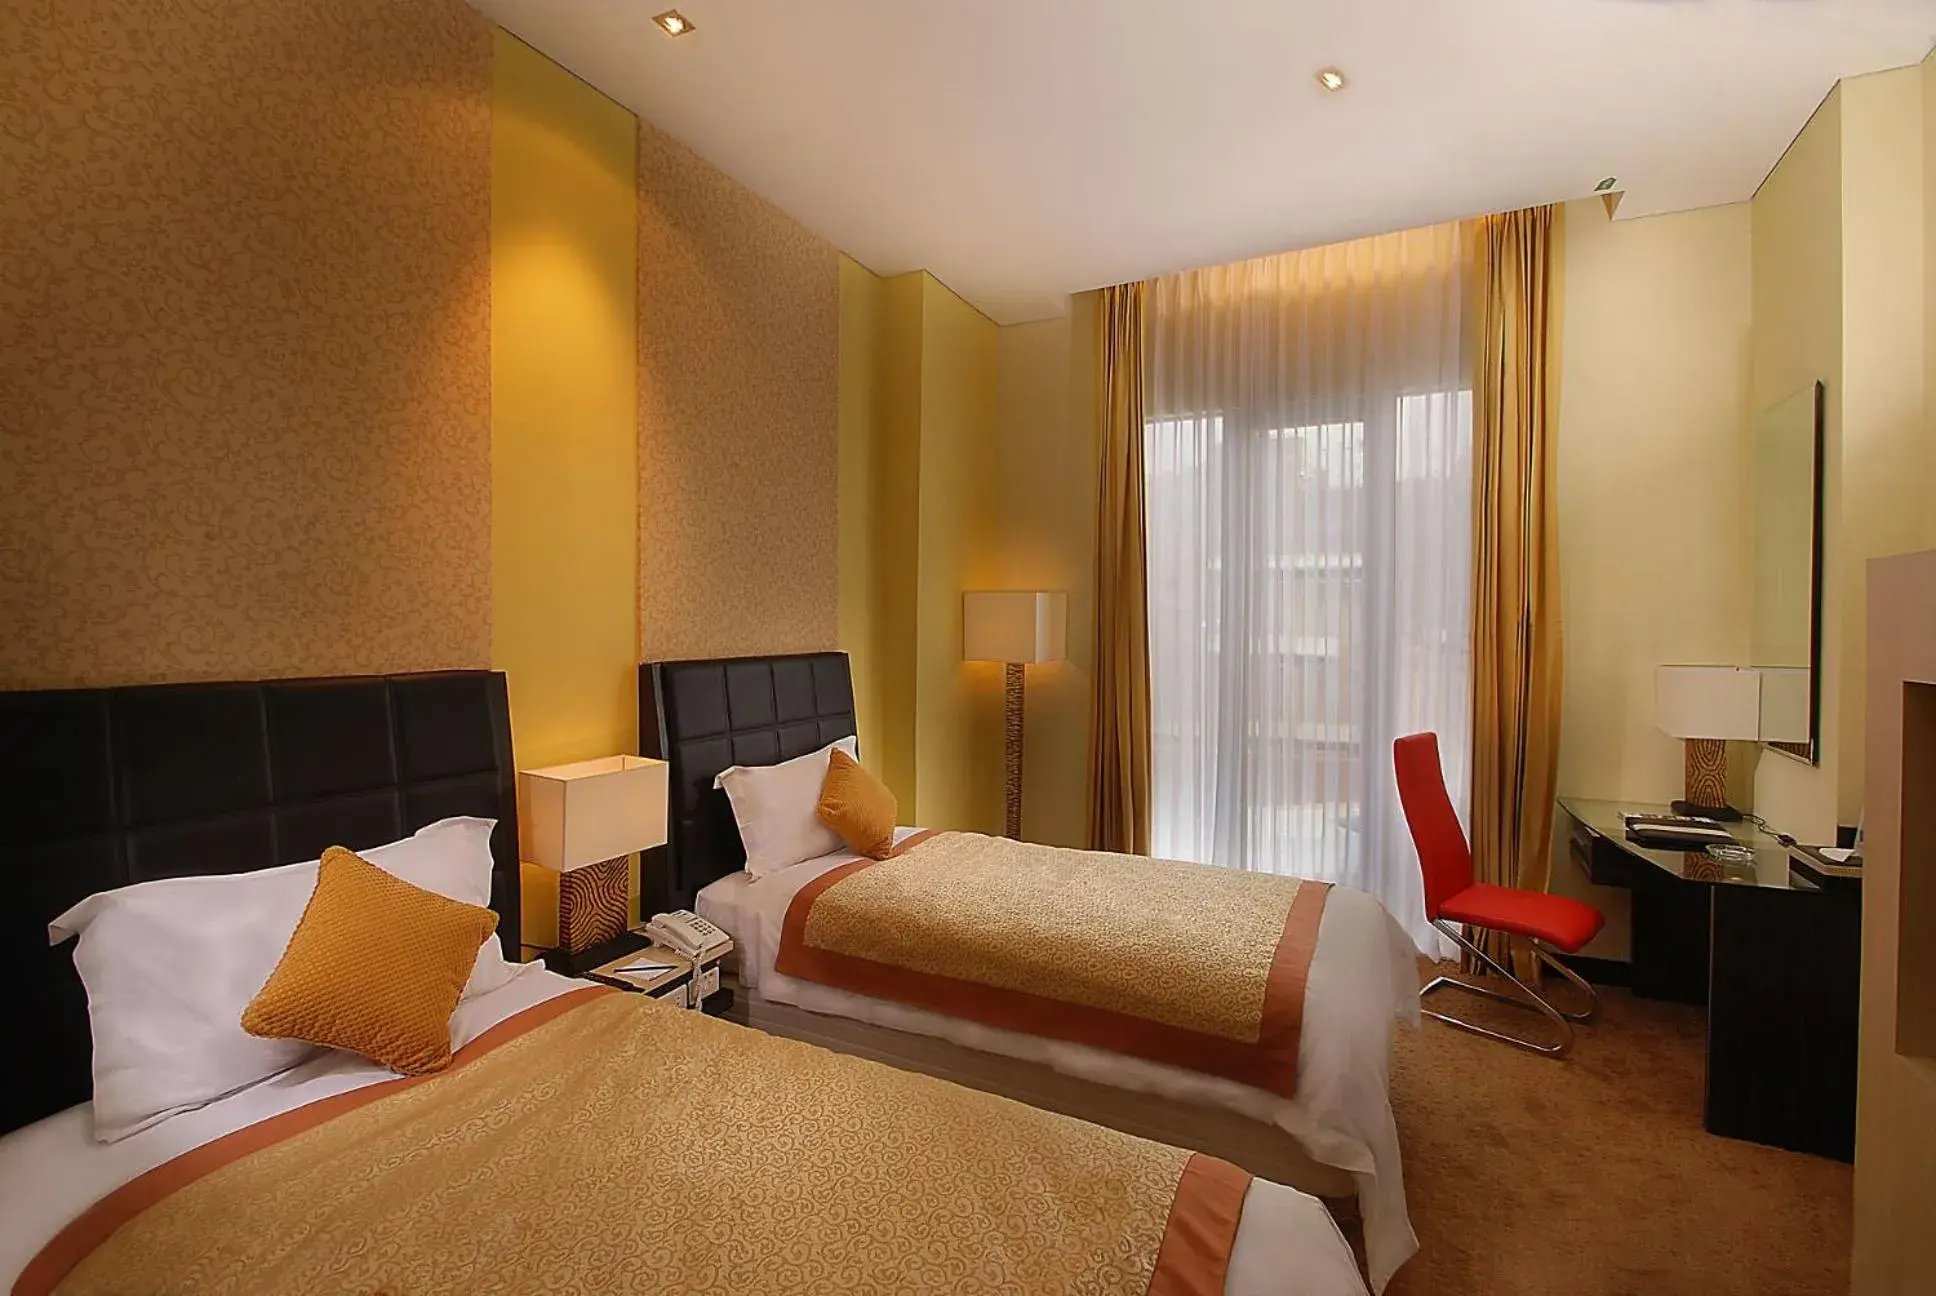 Bedroom, Bed in Golden Flower Hotel